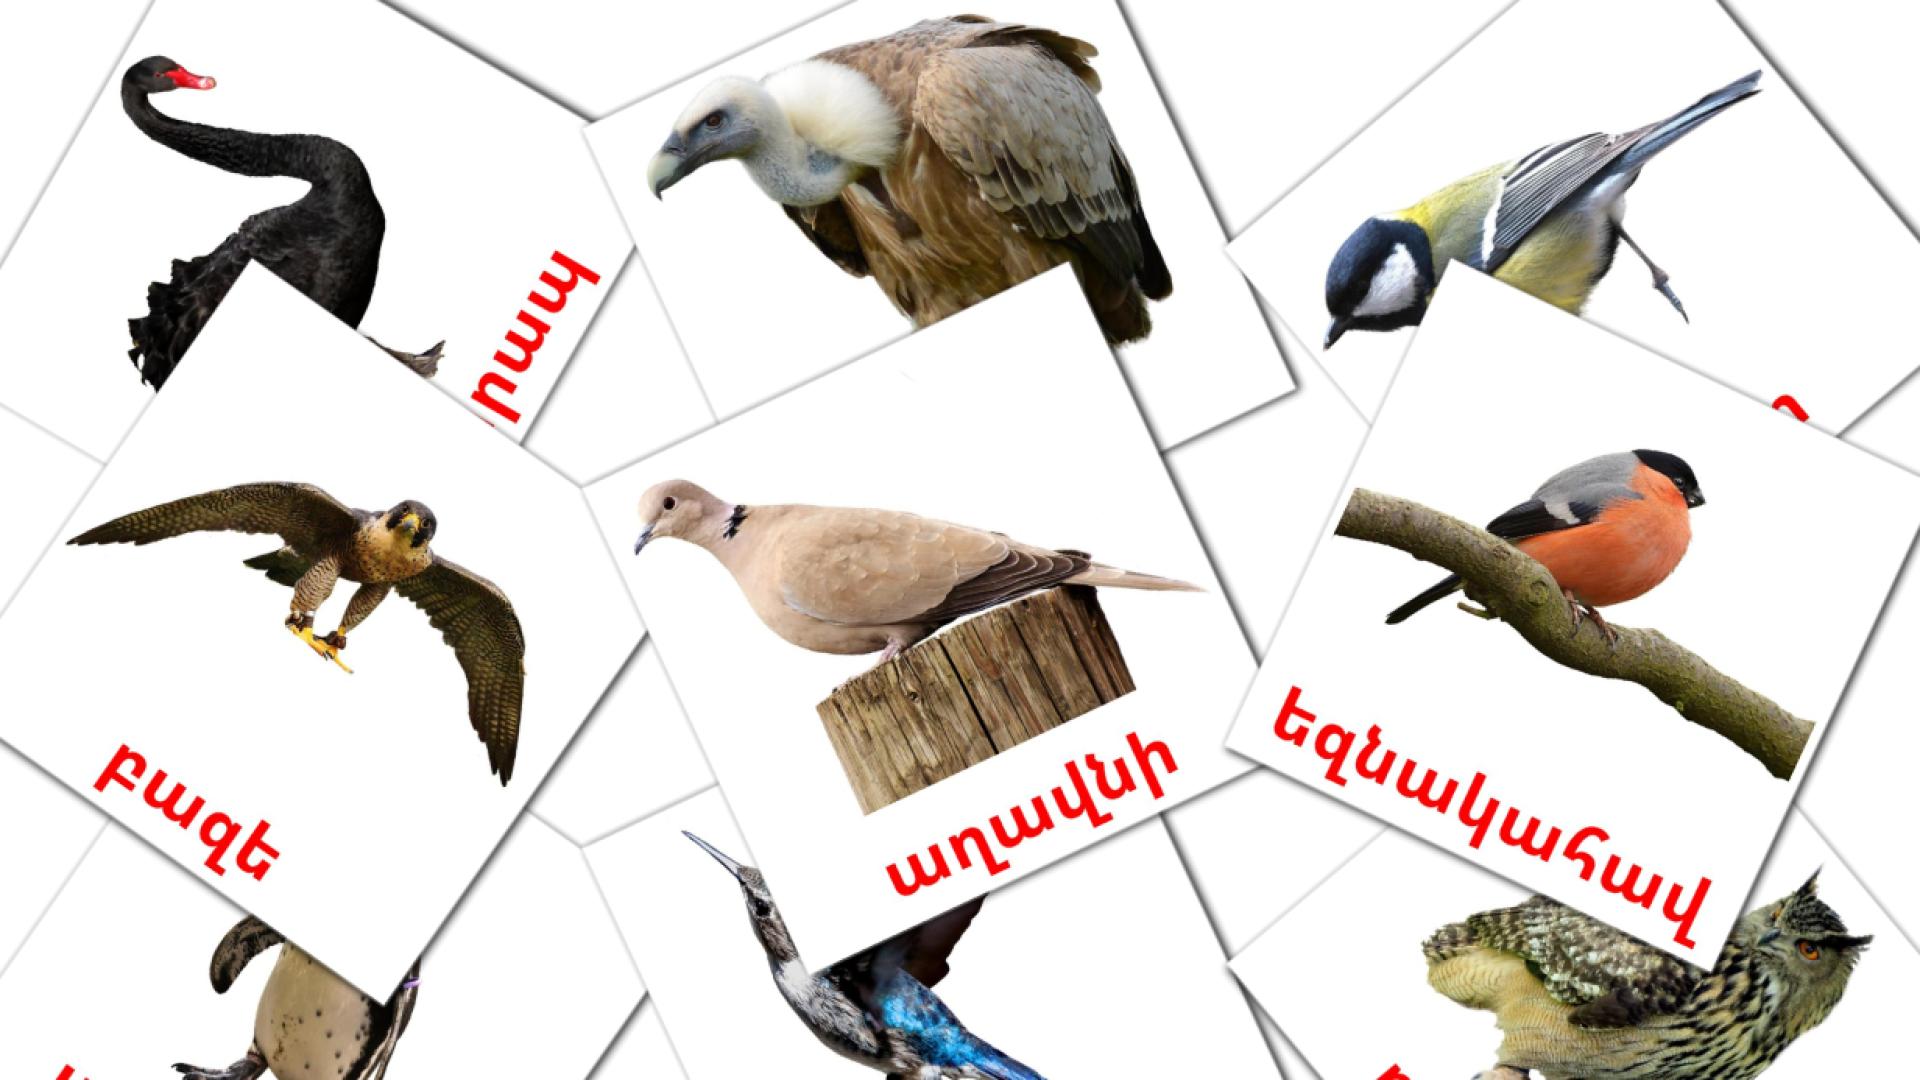 Wildvögel - Armenisch Vokabelkarten